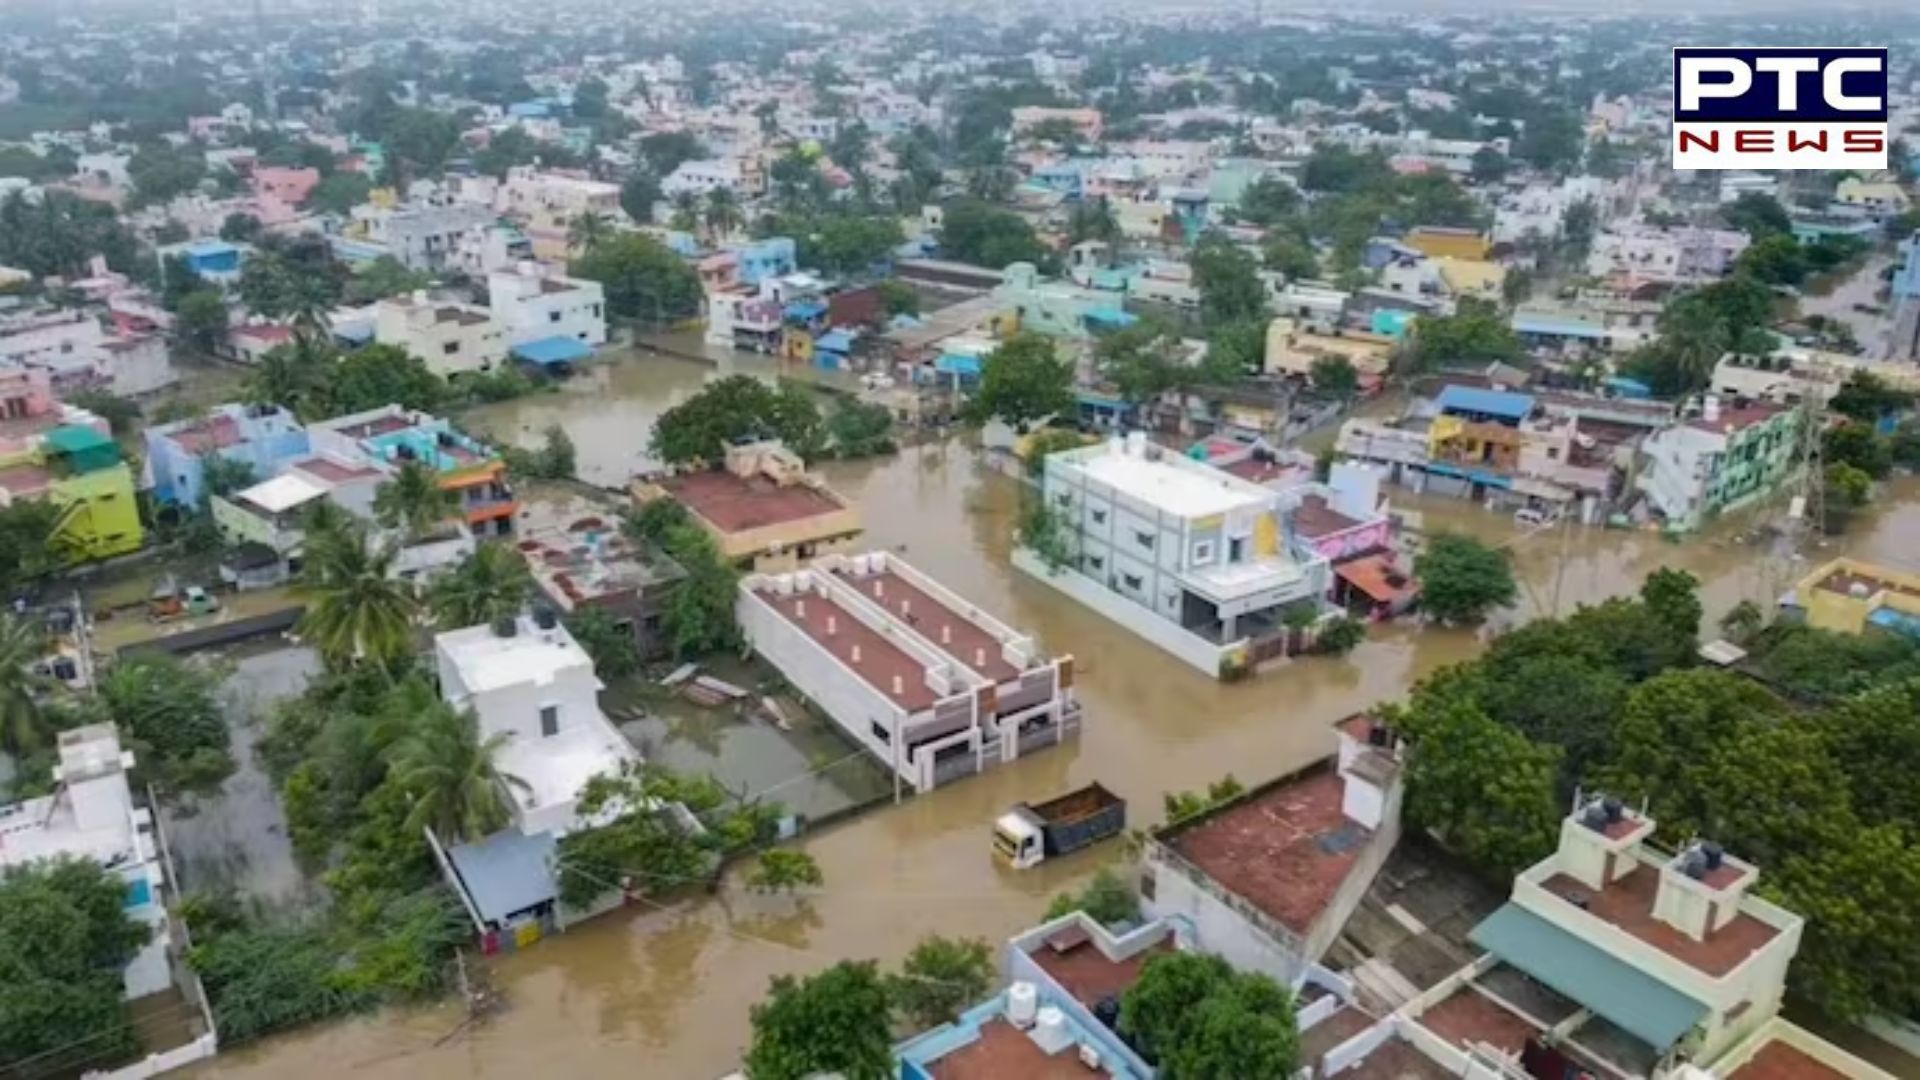 31 dead in Tamil Nadu rain, Centre allocates Rs 900 crore: Finance Minister